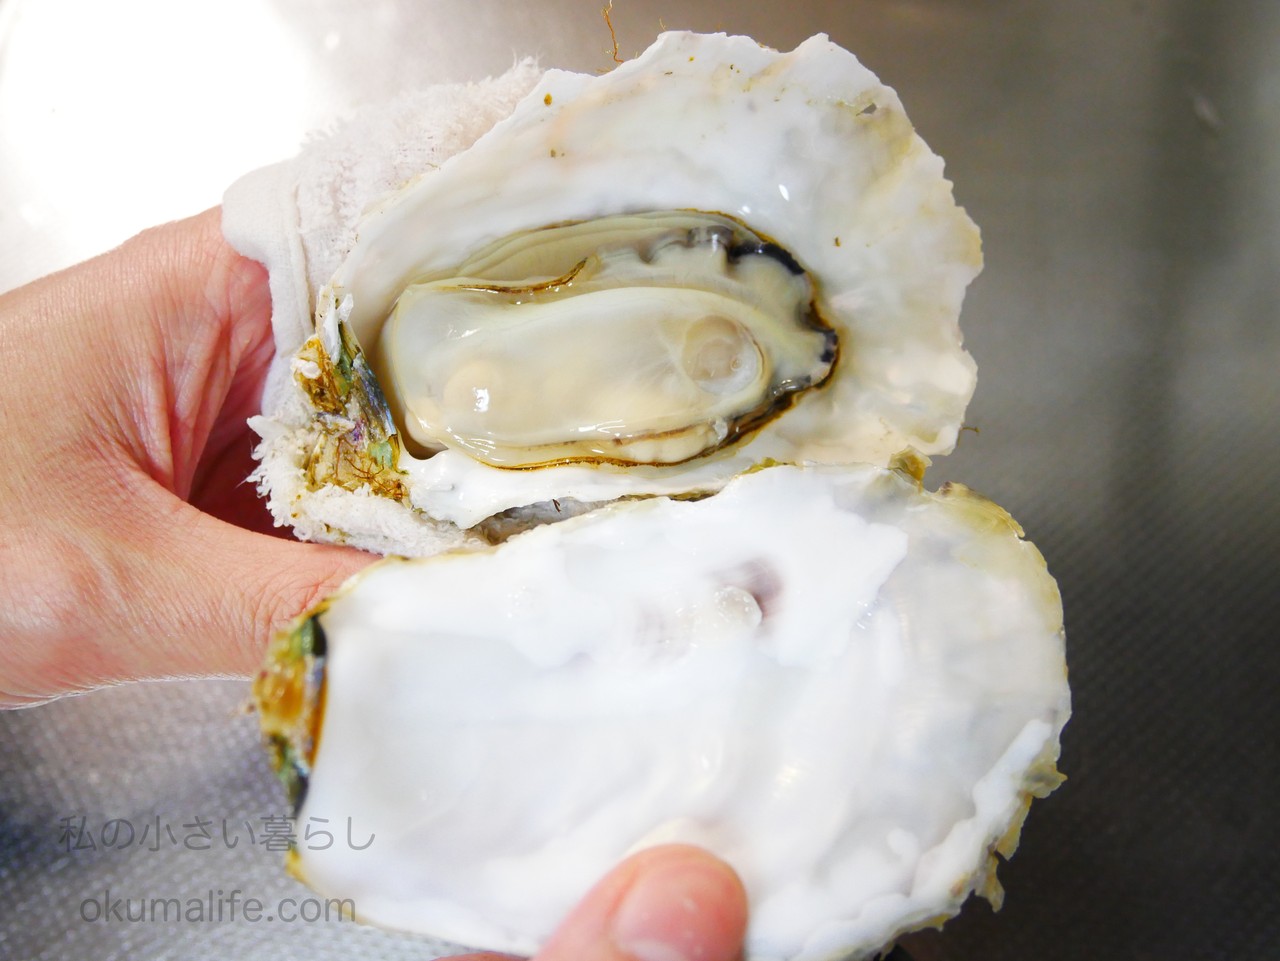 牡蠣 レンジ 付き 殻 殻付き牡蠣は、レンジでチンが簡単。 レシピ・作り方